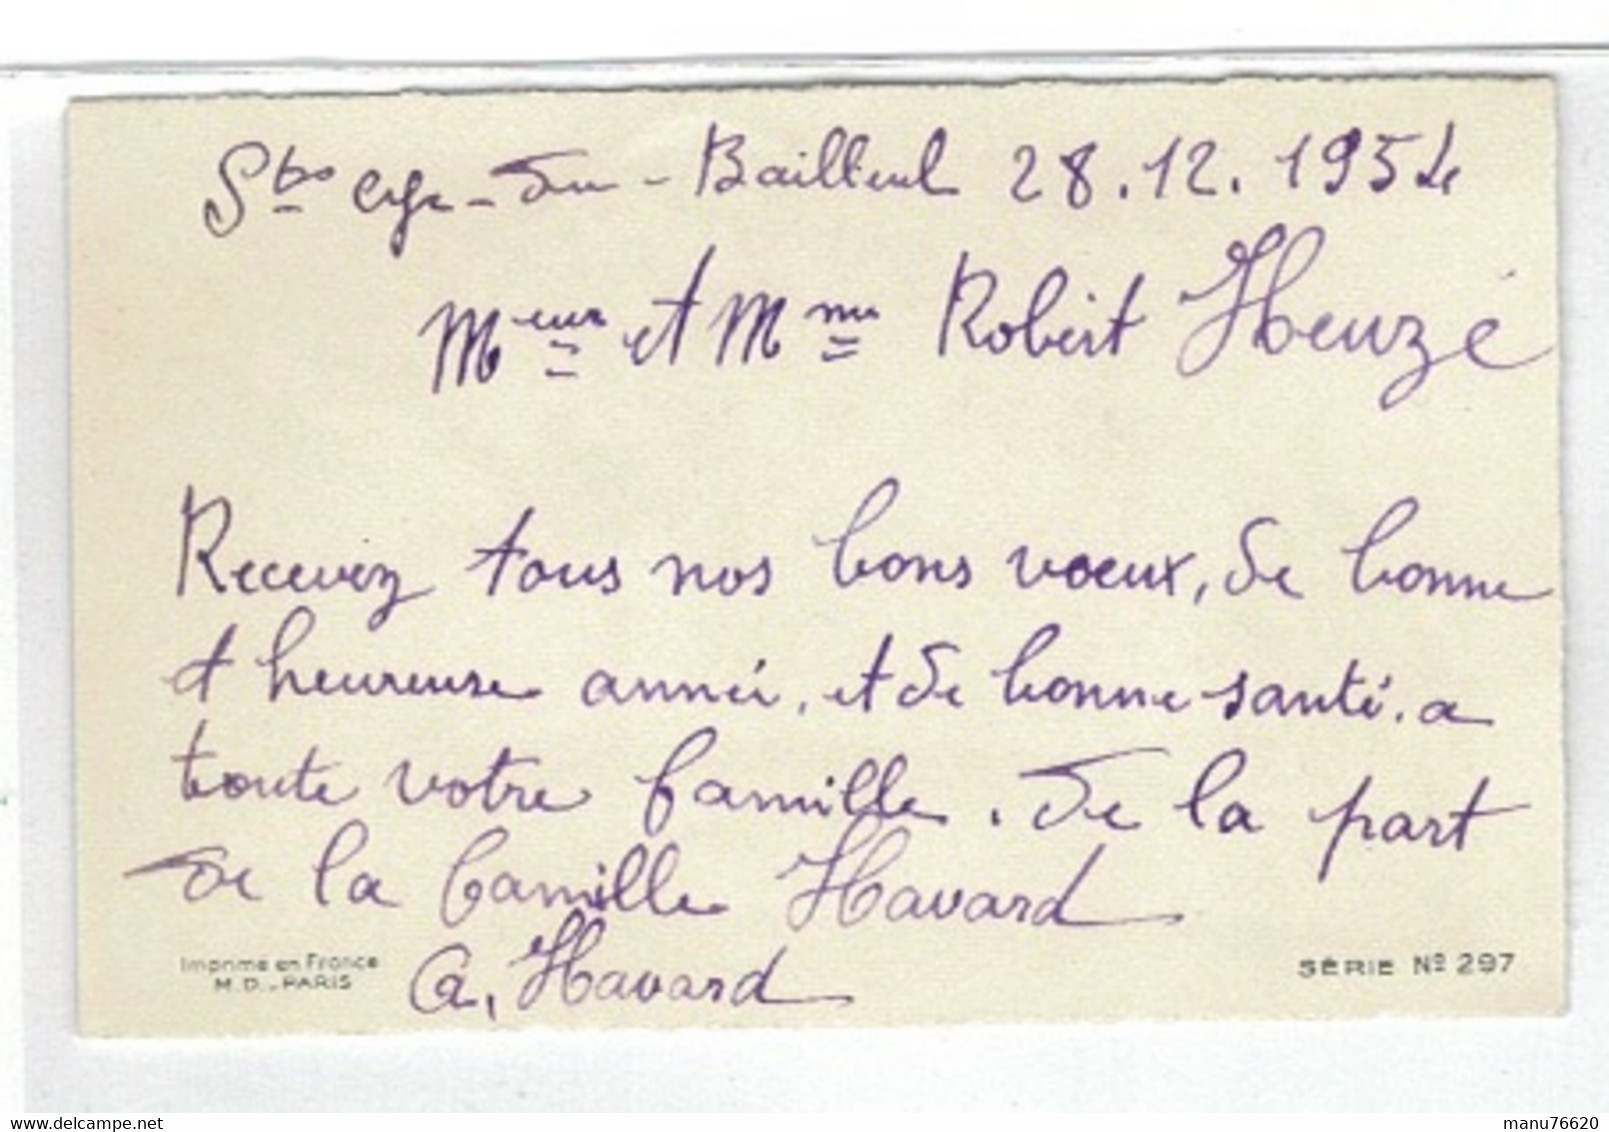 CARTE VOEUX ET BONNE ANNEE- Chasseur Et Fusil , Saint Cyr Du Bailleul , Manche-  28,12,1954 - - Nieuwjaar